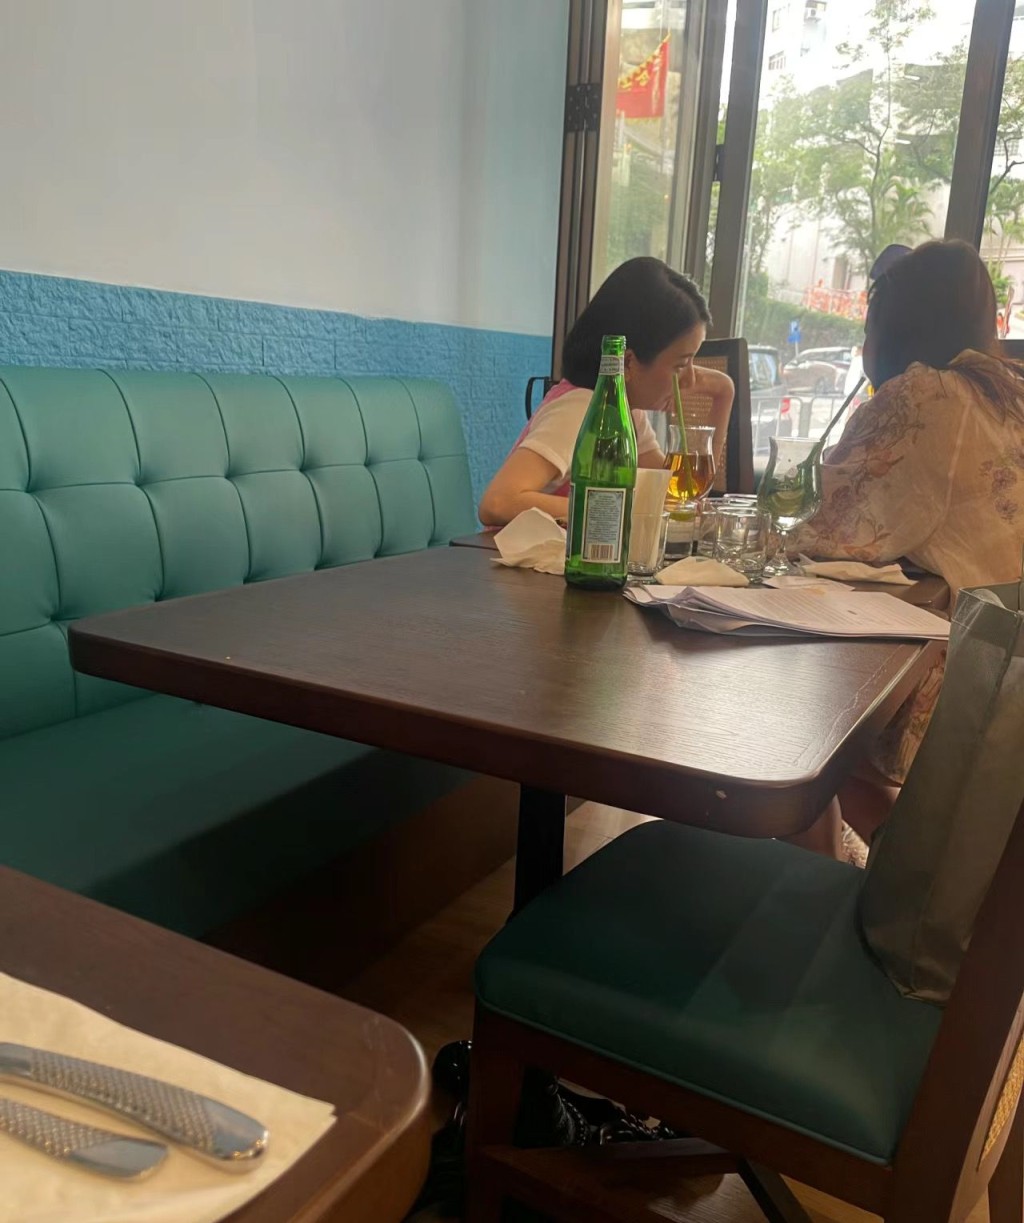 有网民透露日前在跑马地食饭偶遇方媛，可见两人一脸严肃讨论，加上桌面摆放着一堆文件，估计正在商讨公事。